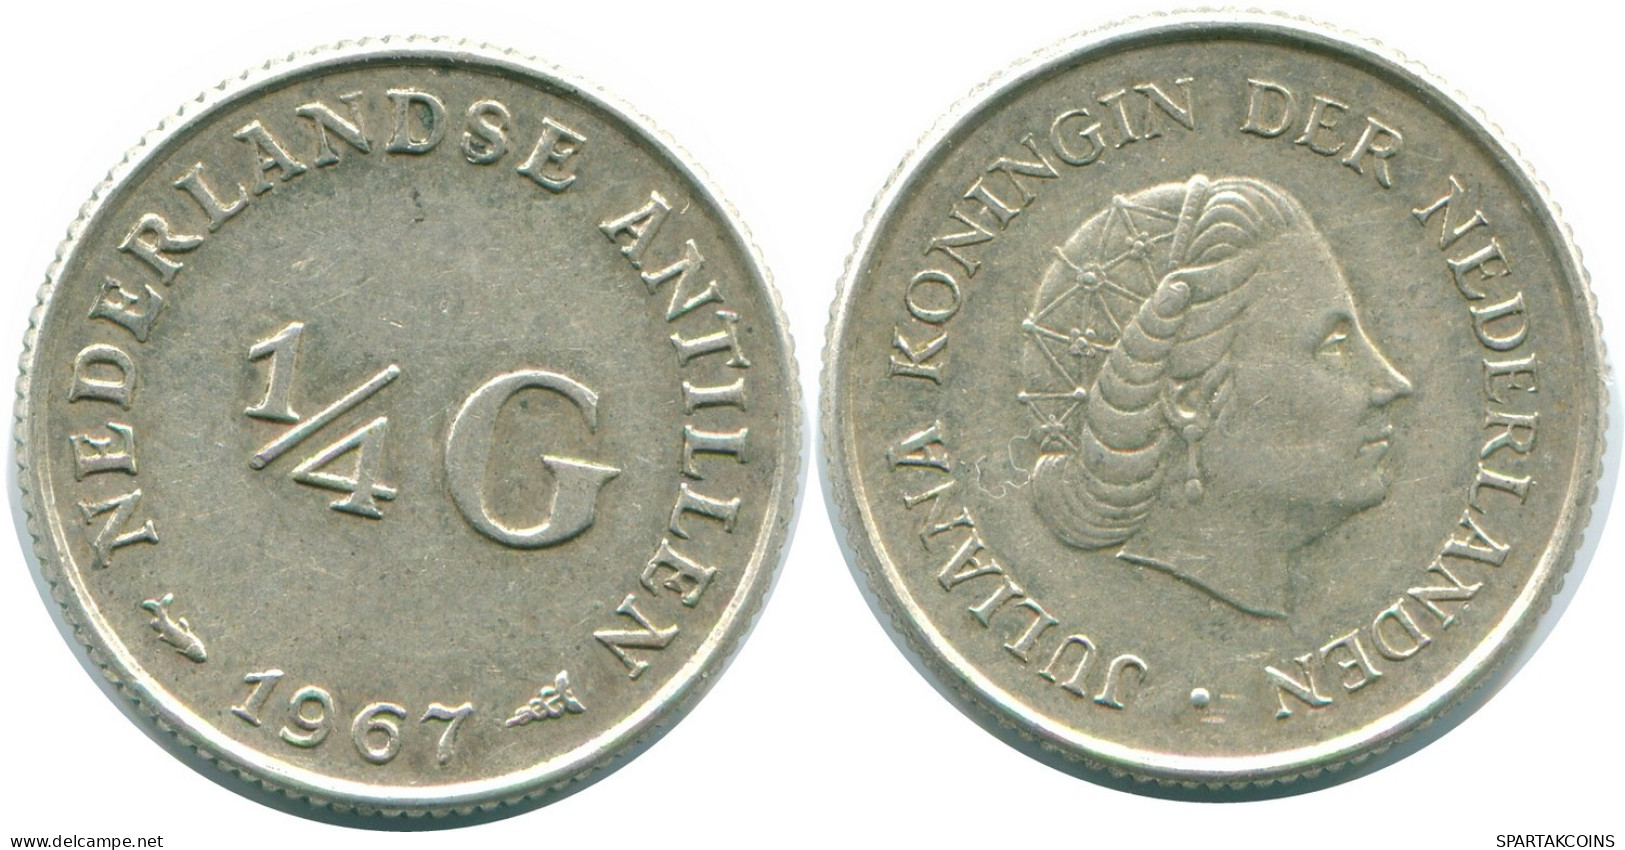 1/4 GULDEN 1967 NIEDERLÄNDISCHE ANTILLEN SILBER Koloniale Münze #NL11480.4.D.A - Antille Olandesi